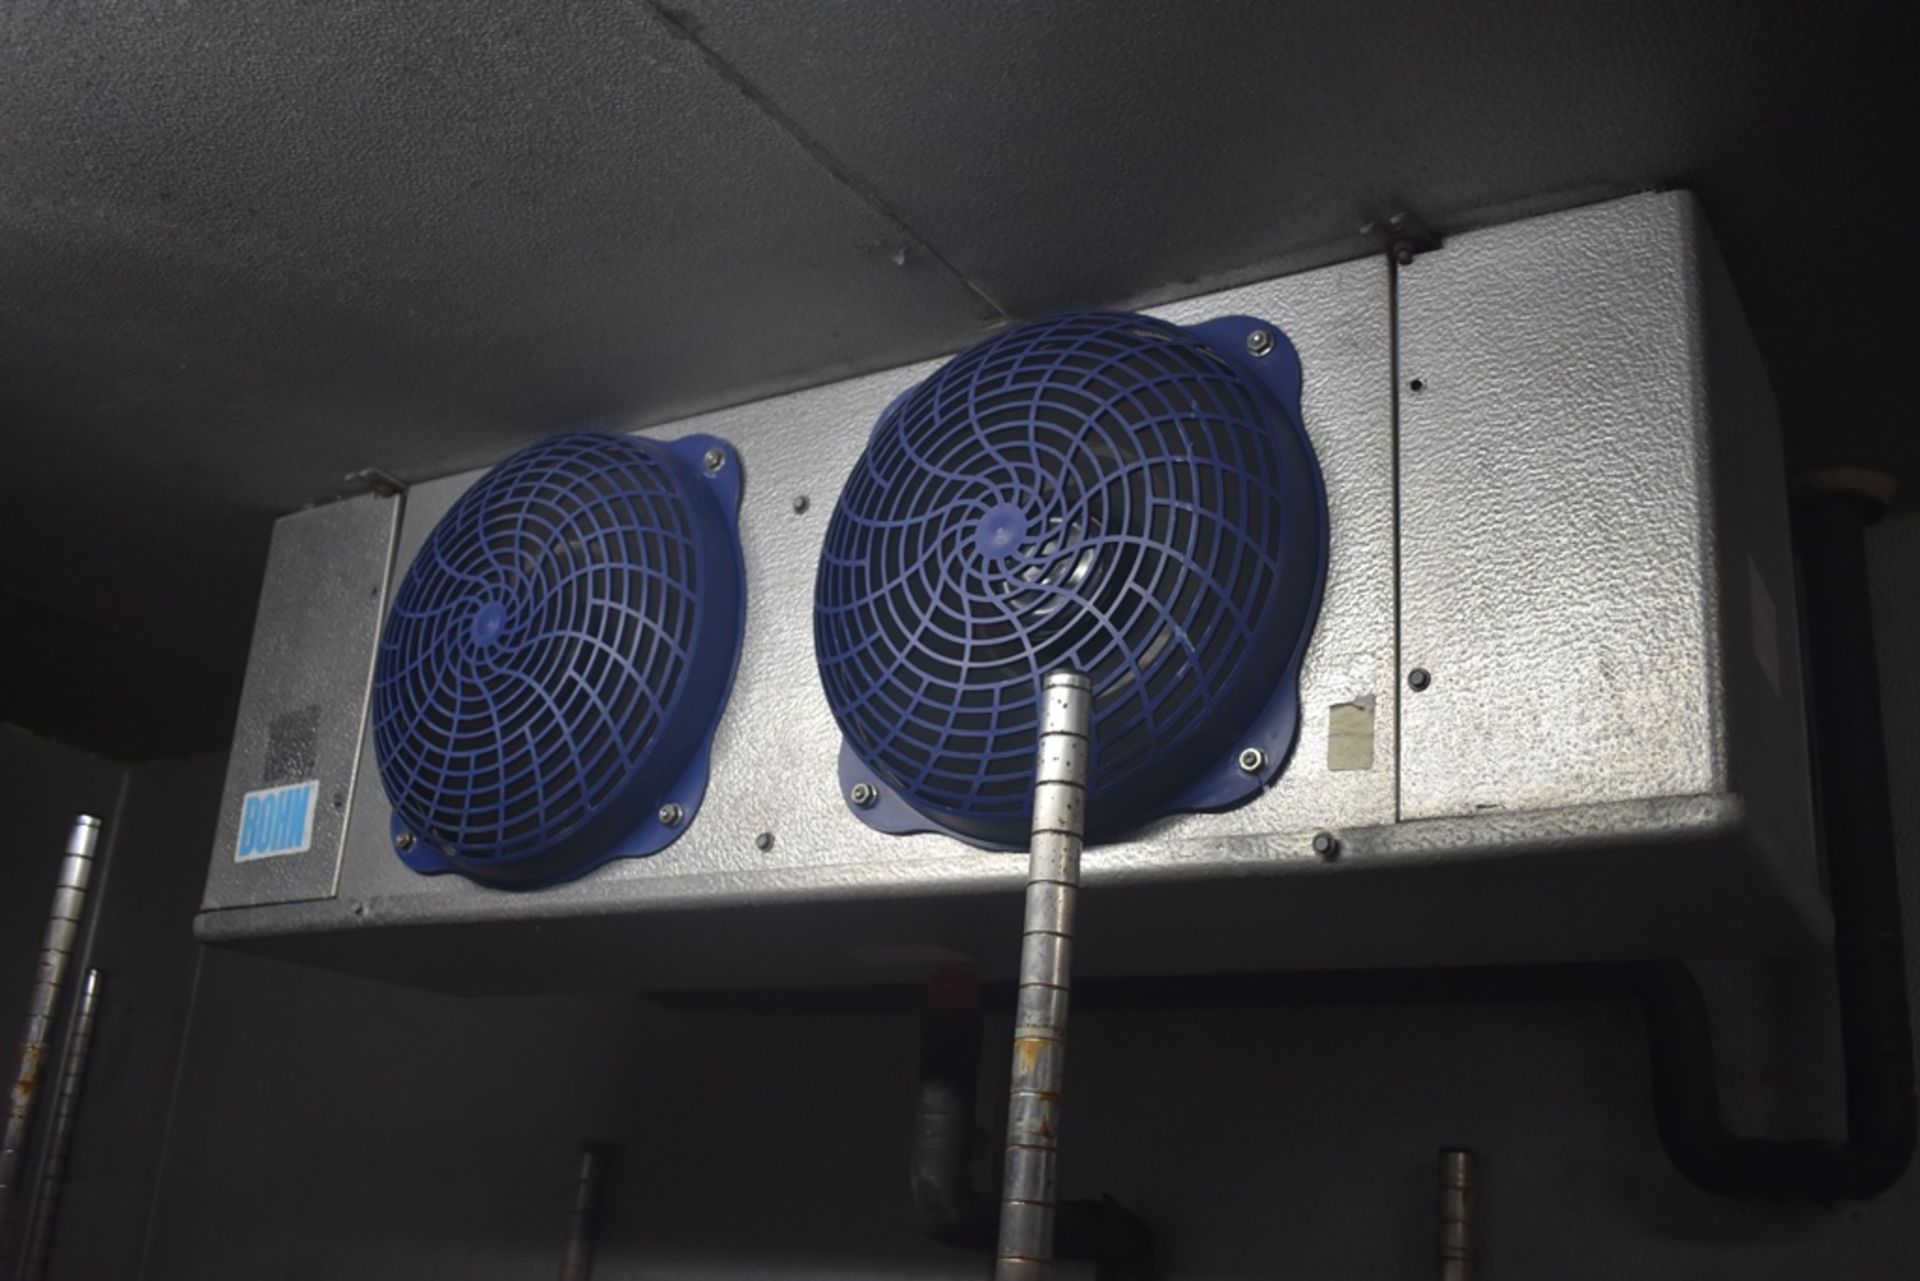 Cámara de congelación medidas 2.50 x 2.54 x 2.20 m, incluye difusor de dos ventiladores marca Bohn, - Image 11 of 31